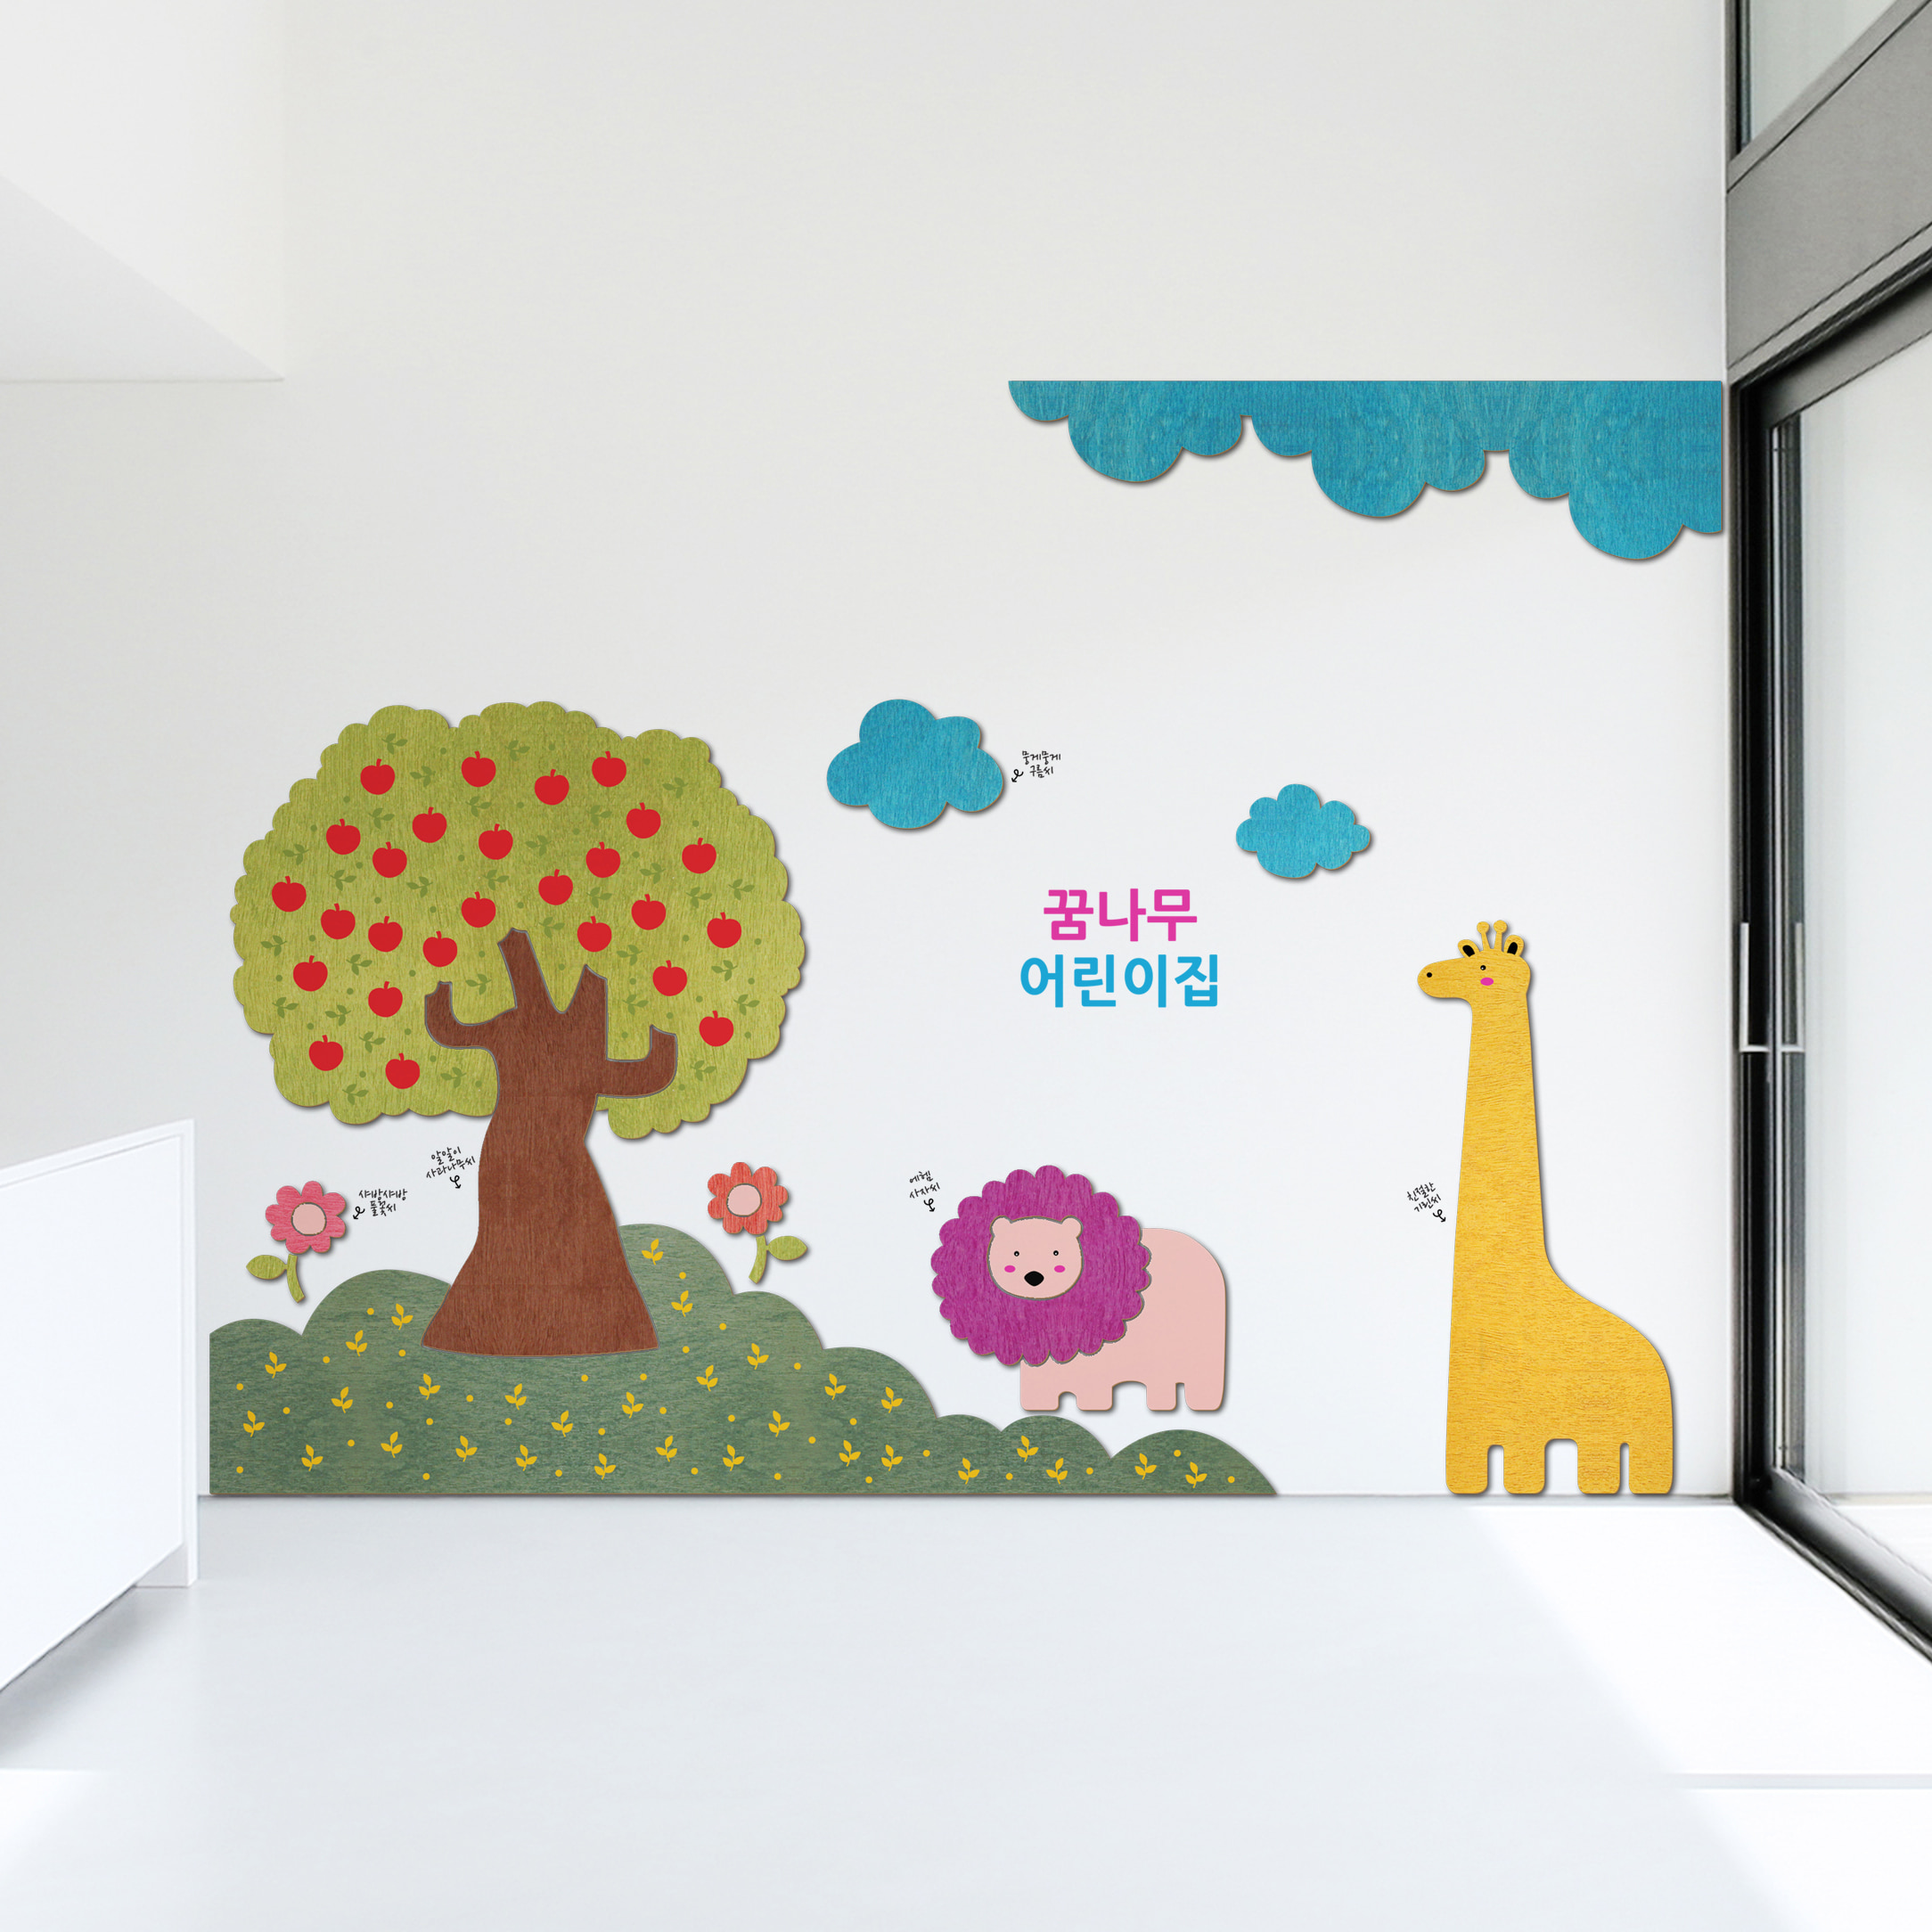 어린이집환경구성 우드스티커 사과나무아래, 유치원 꾸미기 초등 환경 교실 미화